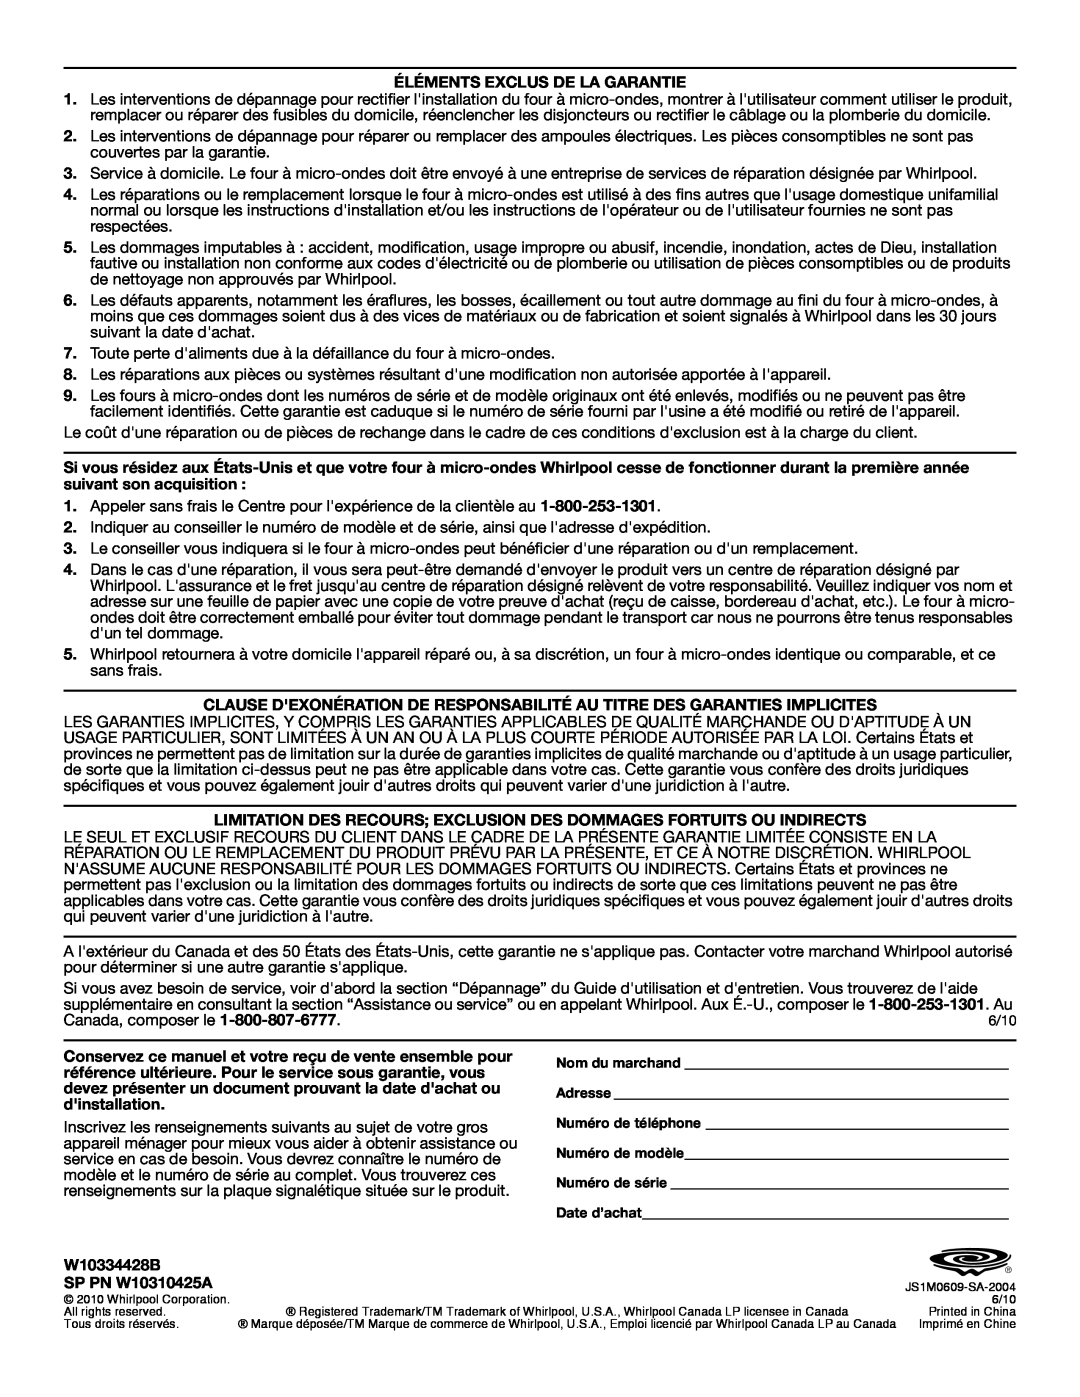 Whirlpool WMC1070 Éléments Exclus De La Garantie, Limitation Des Recours Exclusion Des Dommages Fortuits Ou Indirects 